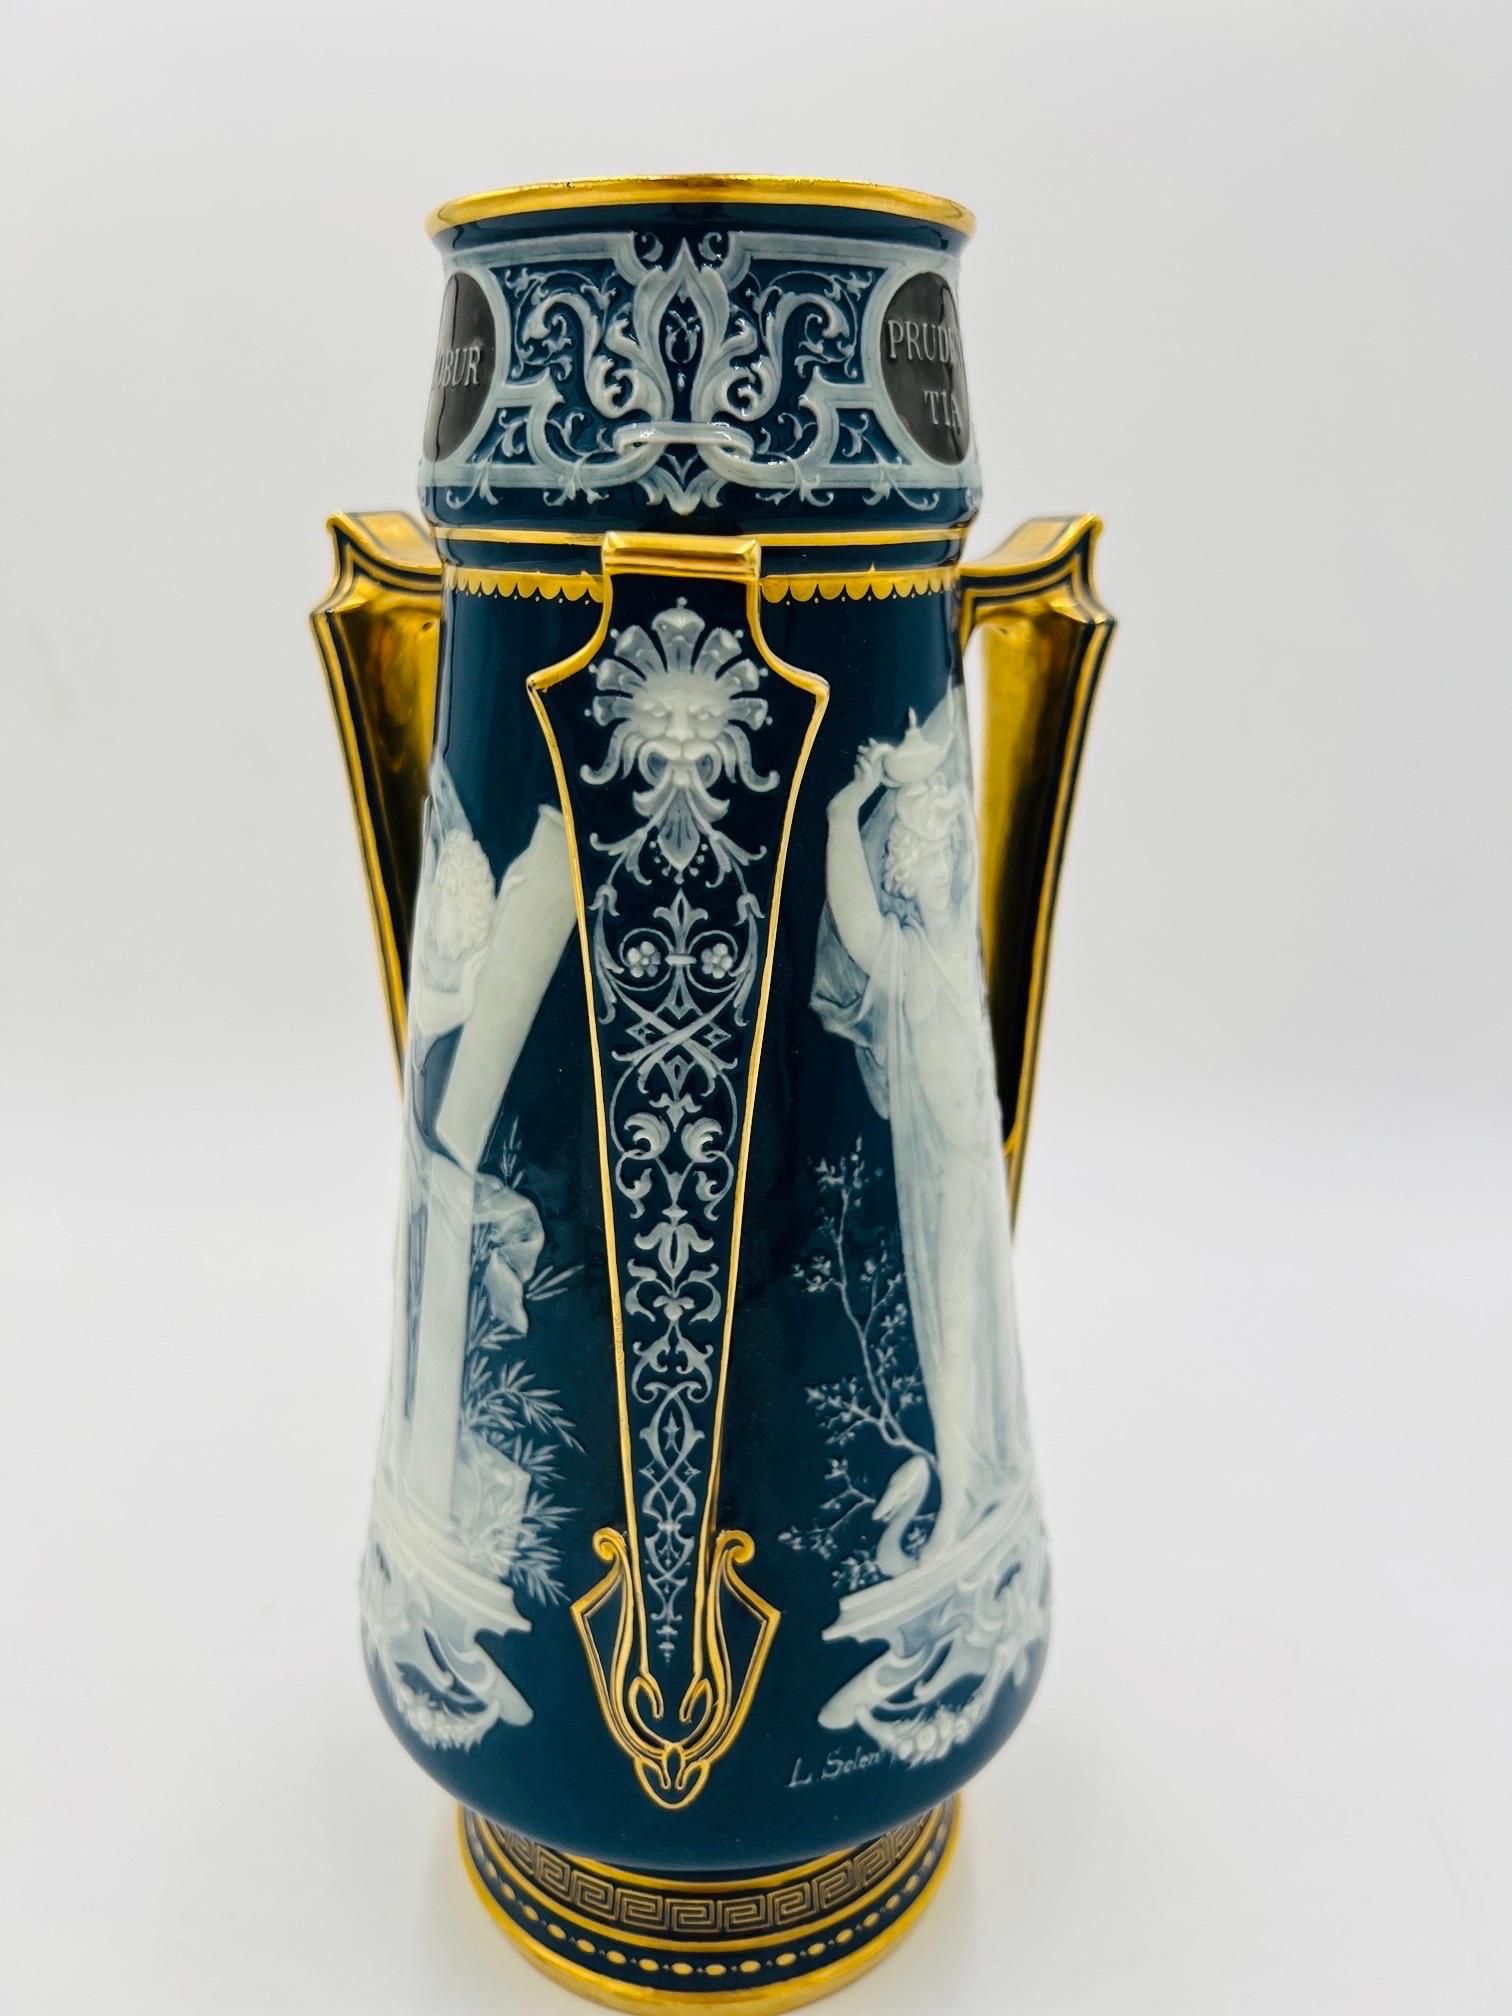 Important Louis Solon Mintons Pate-Sur-Pate “Cardinal Virtues” Porcelain Vase 6